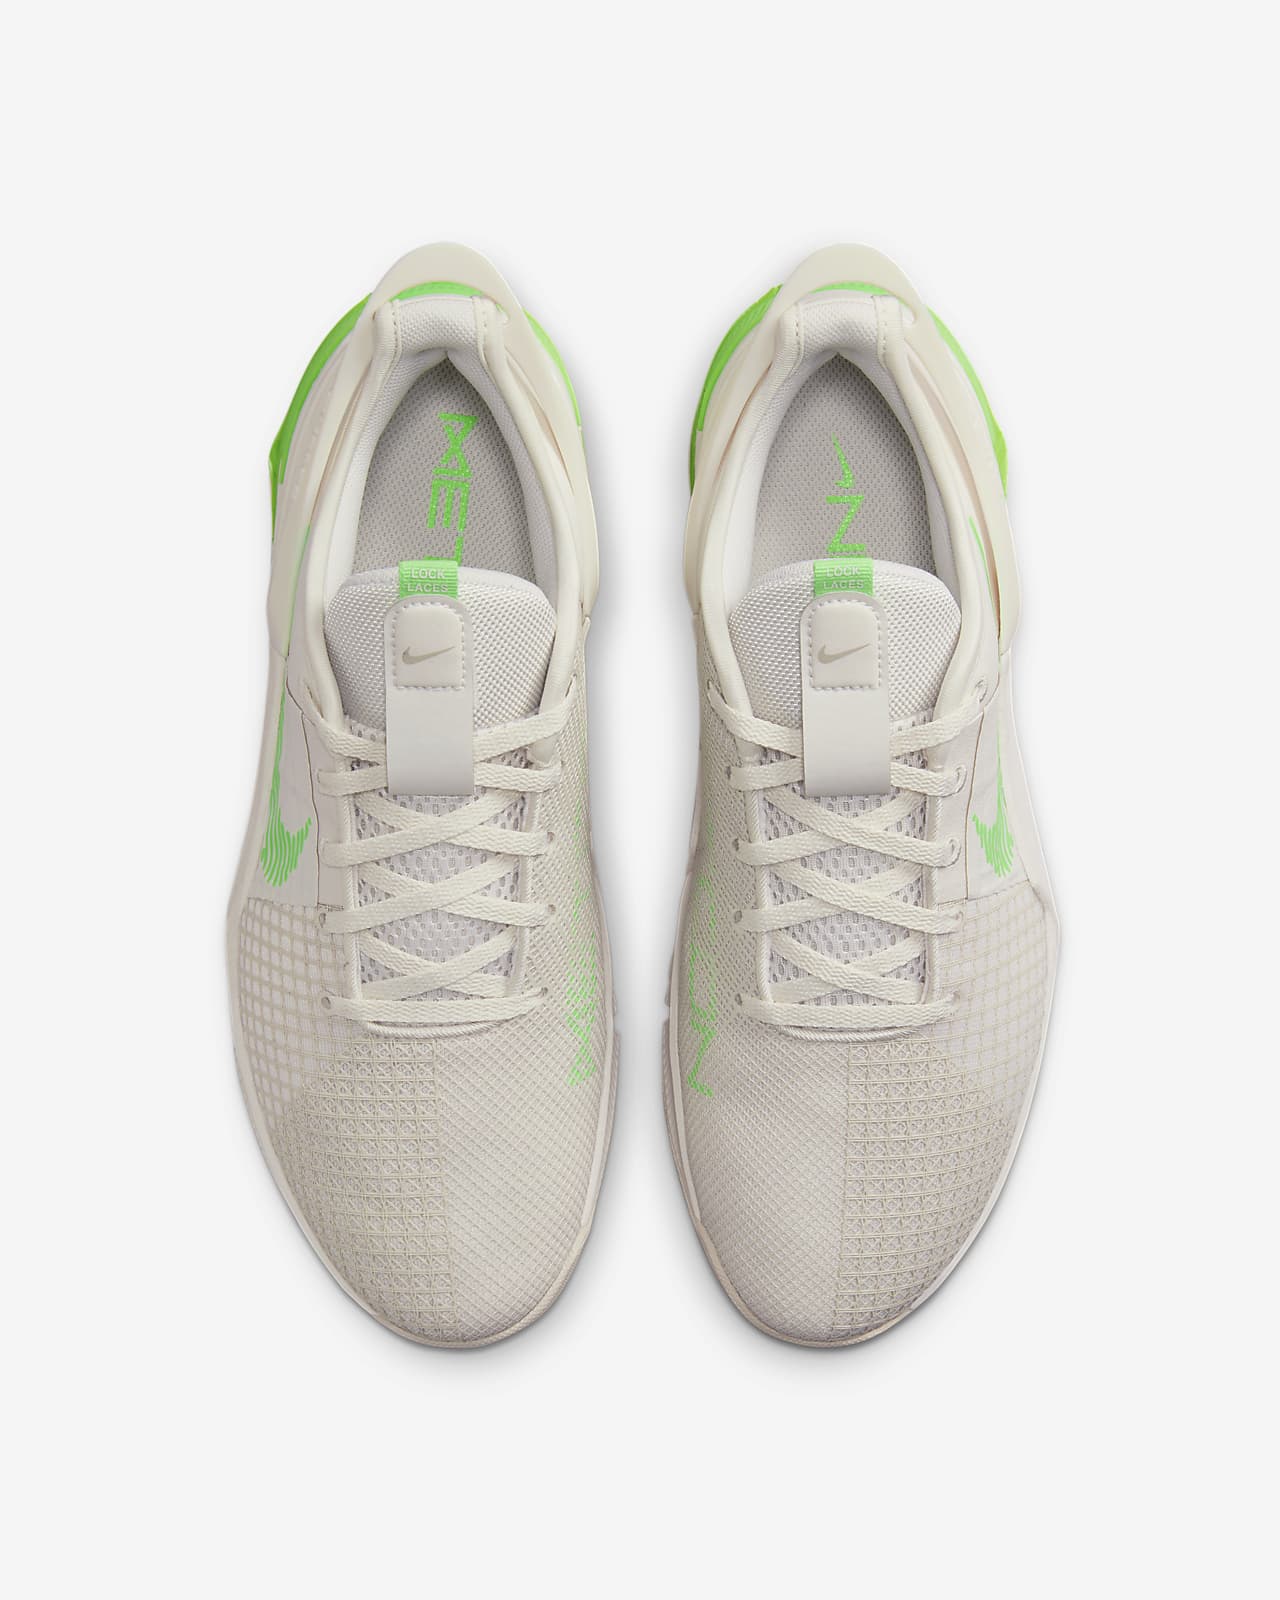 Terug kijken Kust zuiger Nike Metcon 8 FlyEase Men's Easy On/Off Training Shoes. Nike.com